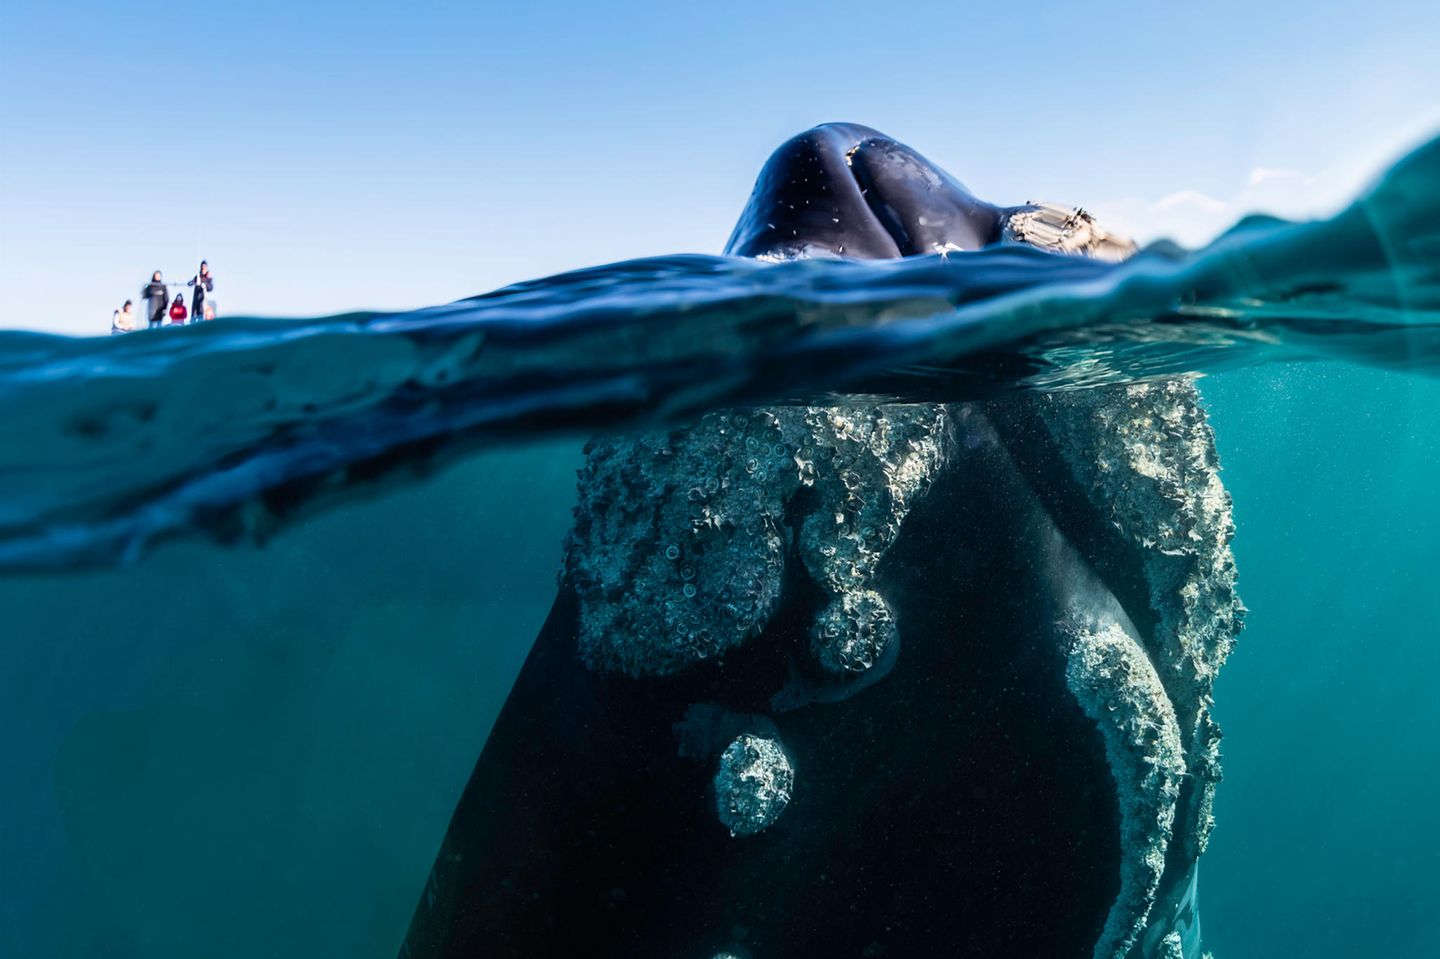 Lärmverschmutzung im Ozean: Neugierige Touristen stören diesen Bartenwal kaum - wenn sie aber den Außenborder eines Motorboots starten, kann das dessen Kommunikation erheblich beeinträchtigen